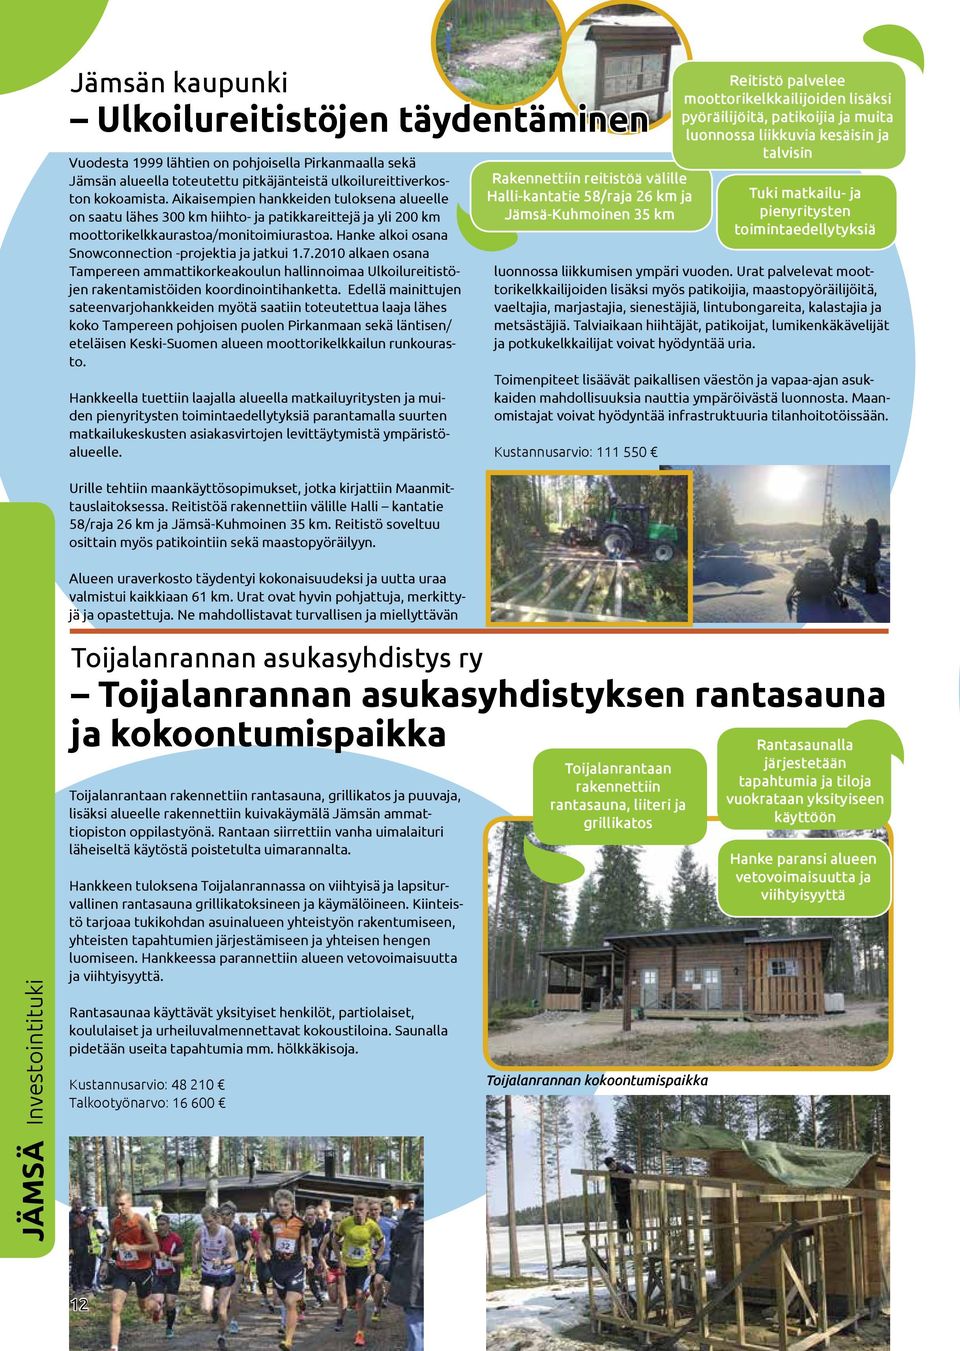 Hanke alkoi osana Snowconnection -projektia ja jatkui 1.7.2010 alkaen osana Tampereen ammattikorkeakoulun hallinnoimaa Ulkoilureitistöjen rakentamistöiden koordinointihanketta.